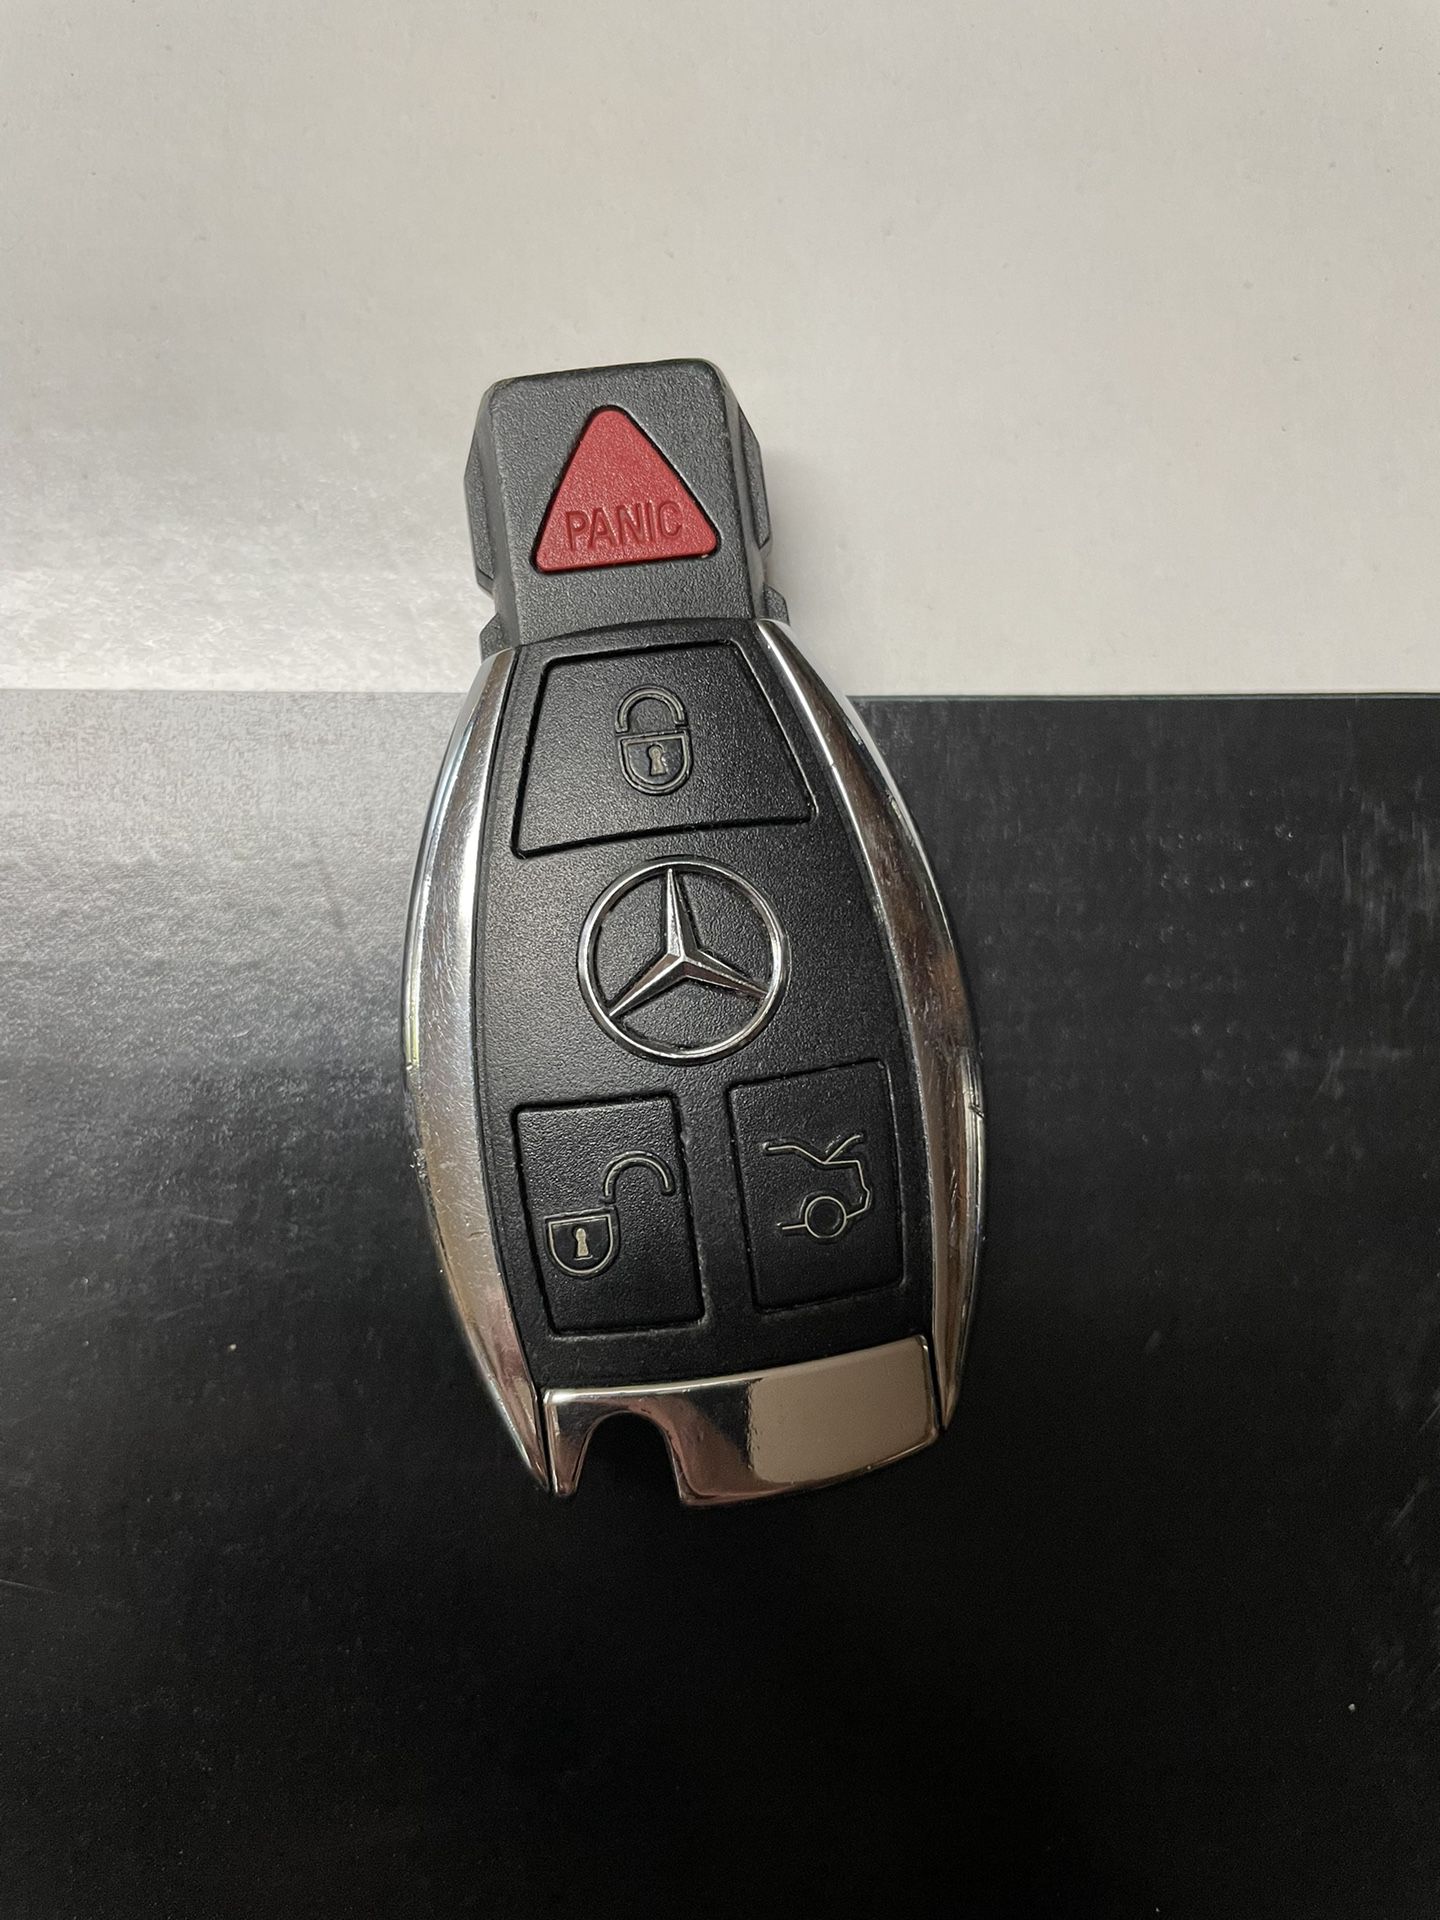 Mercedes Keyfob Remote Control 